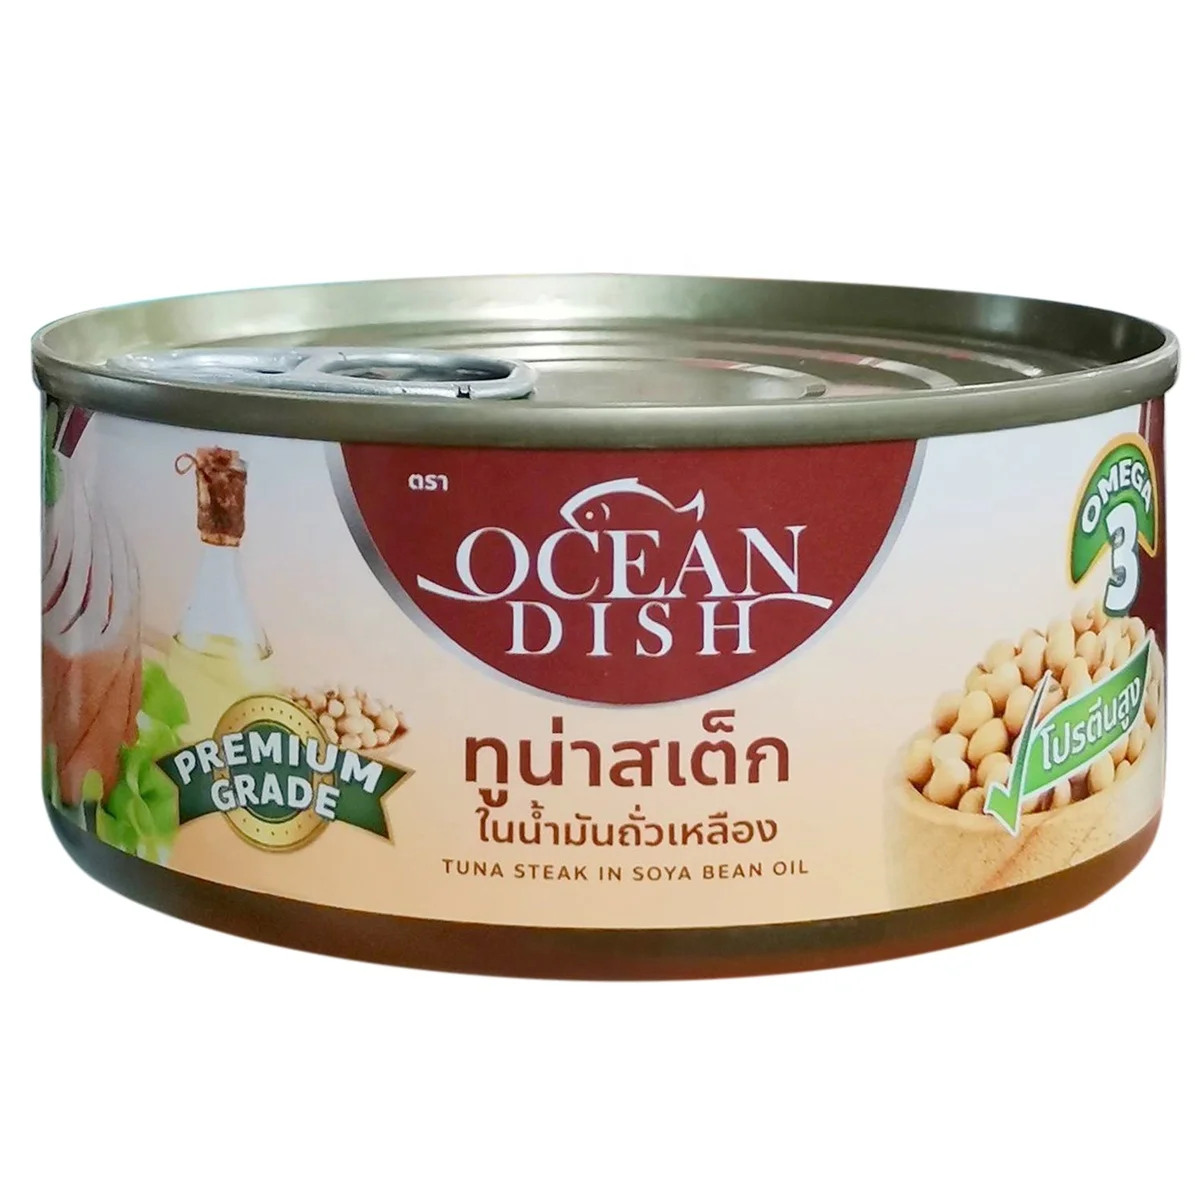 تونة معلبة لحم الستيك في زيت فول الصويا المحيط طبق العلامة التجارية Buy Canned Tuna In Oil Thailand Tuna Factory Manufacturer Canned Tuna Thailand Product On Alibaba Com